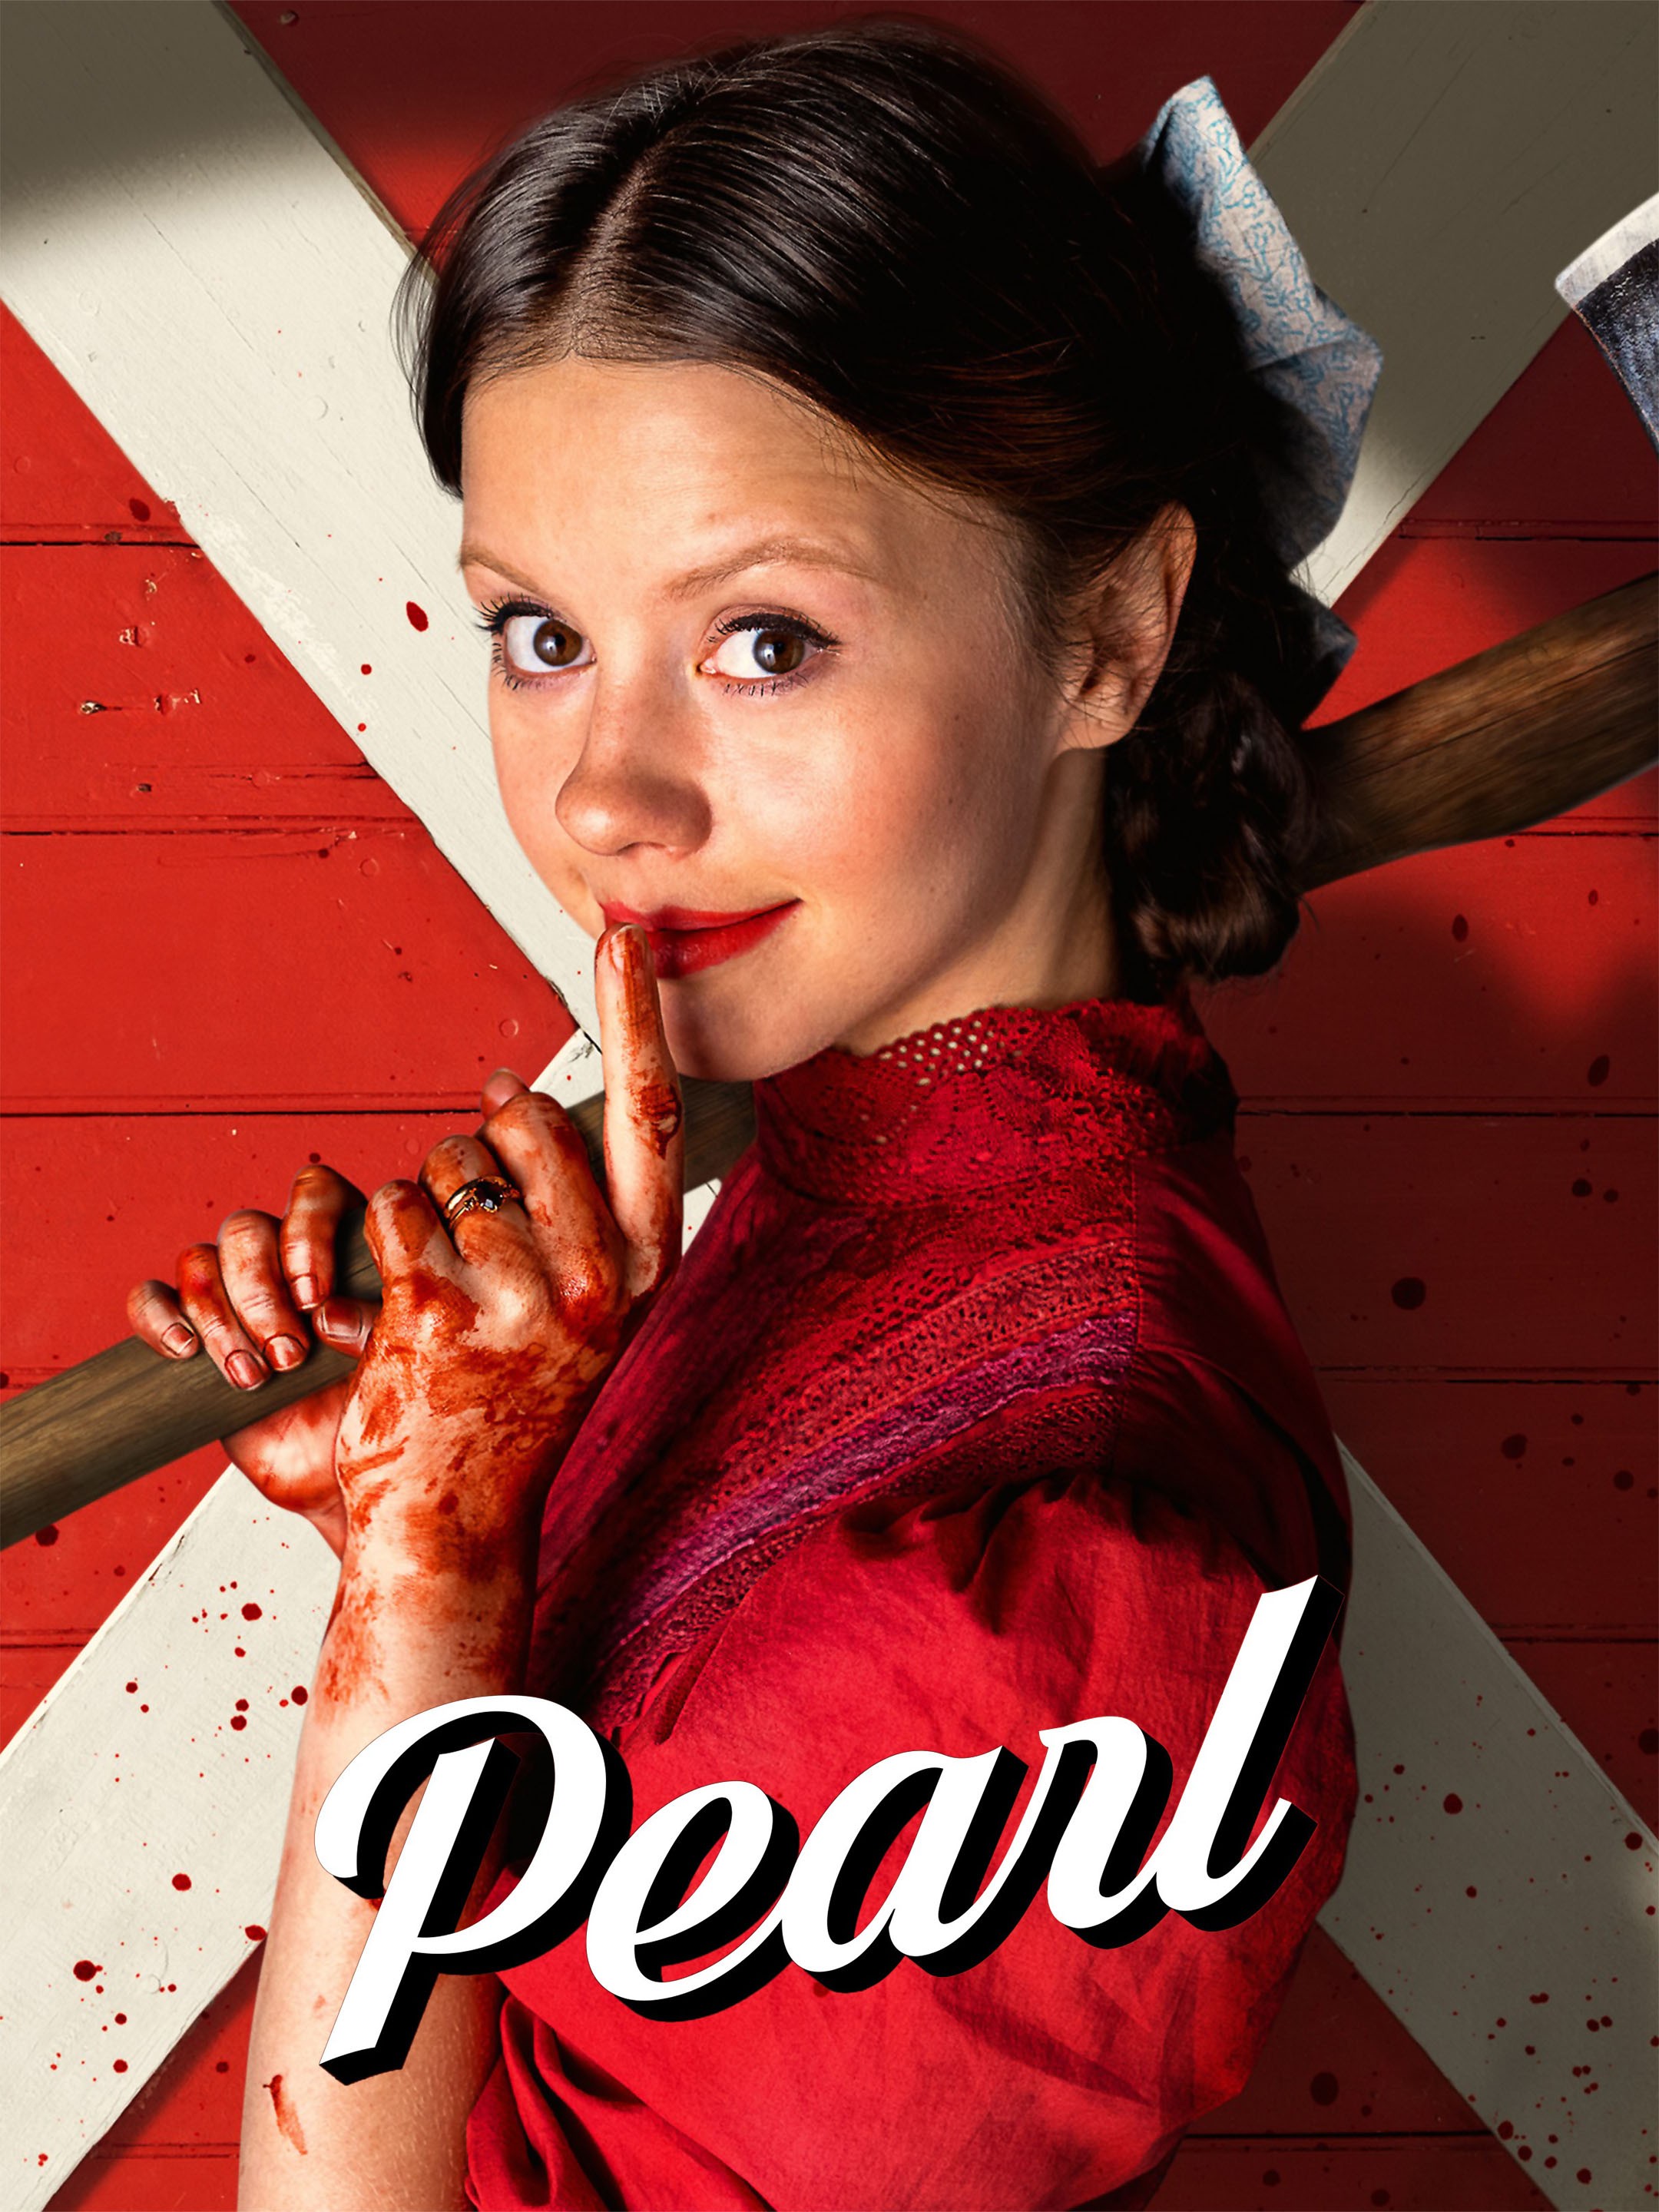 Pearl (2022 film) - Wikipedia